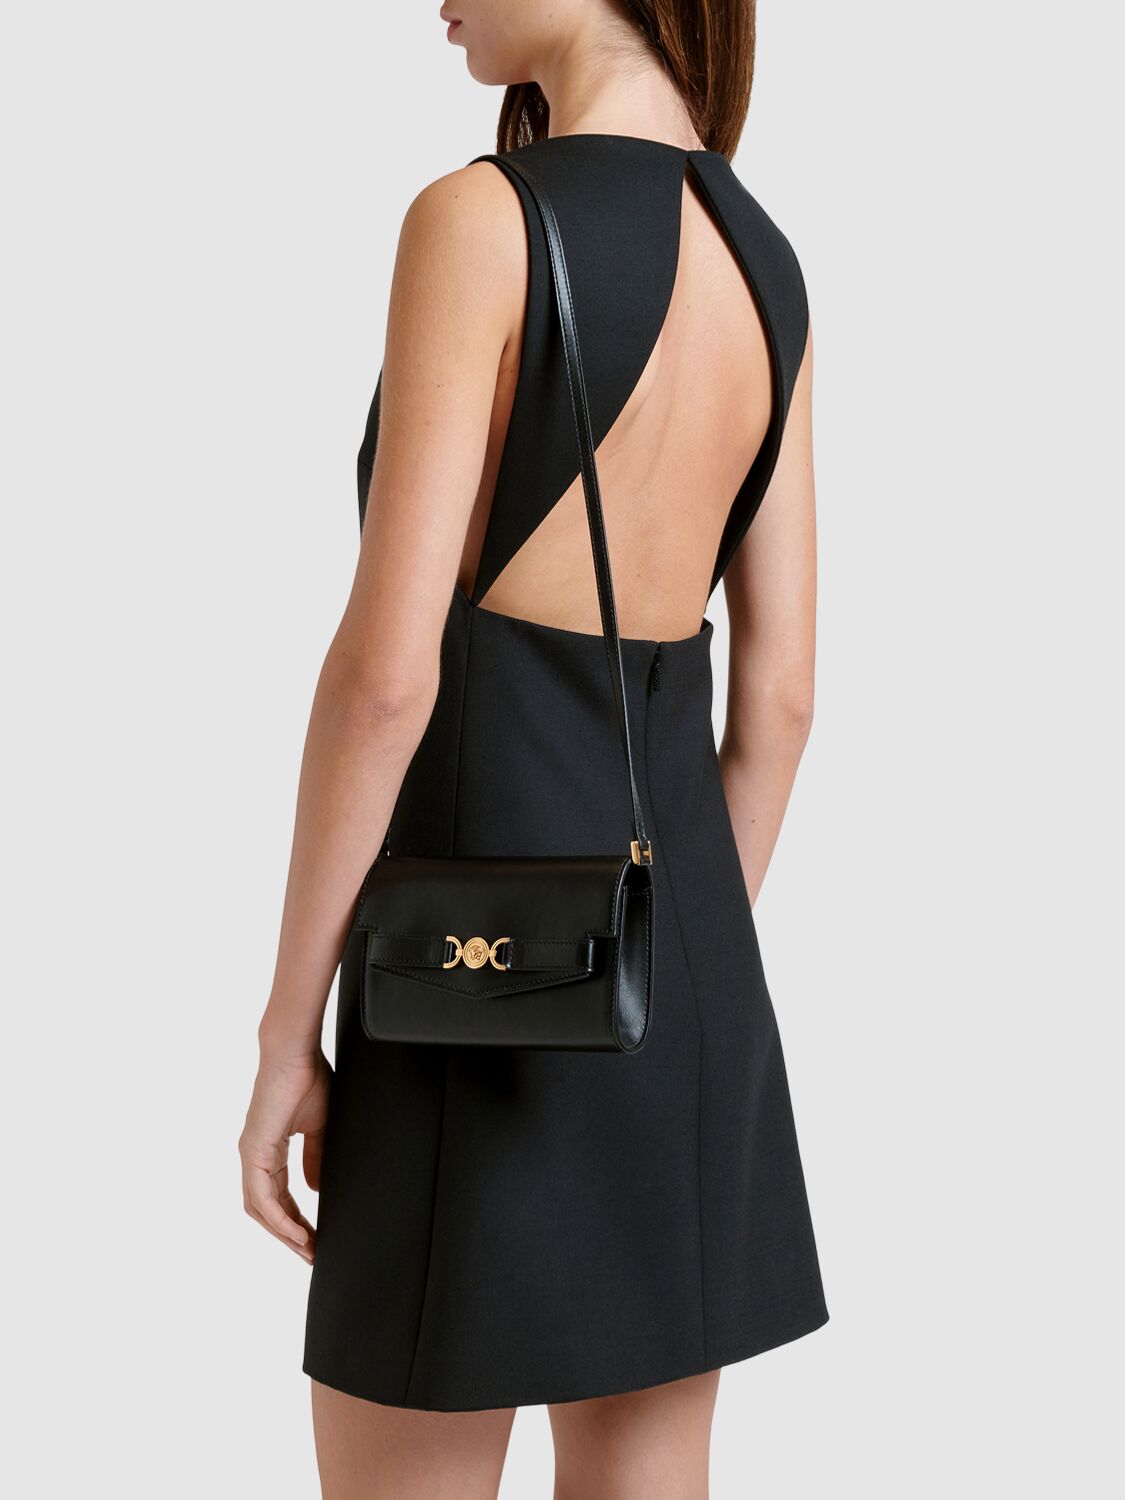 Shop Versace Mini Leather Clutch In Black